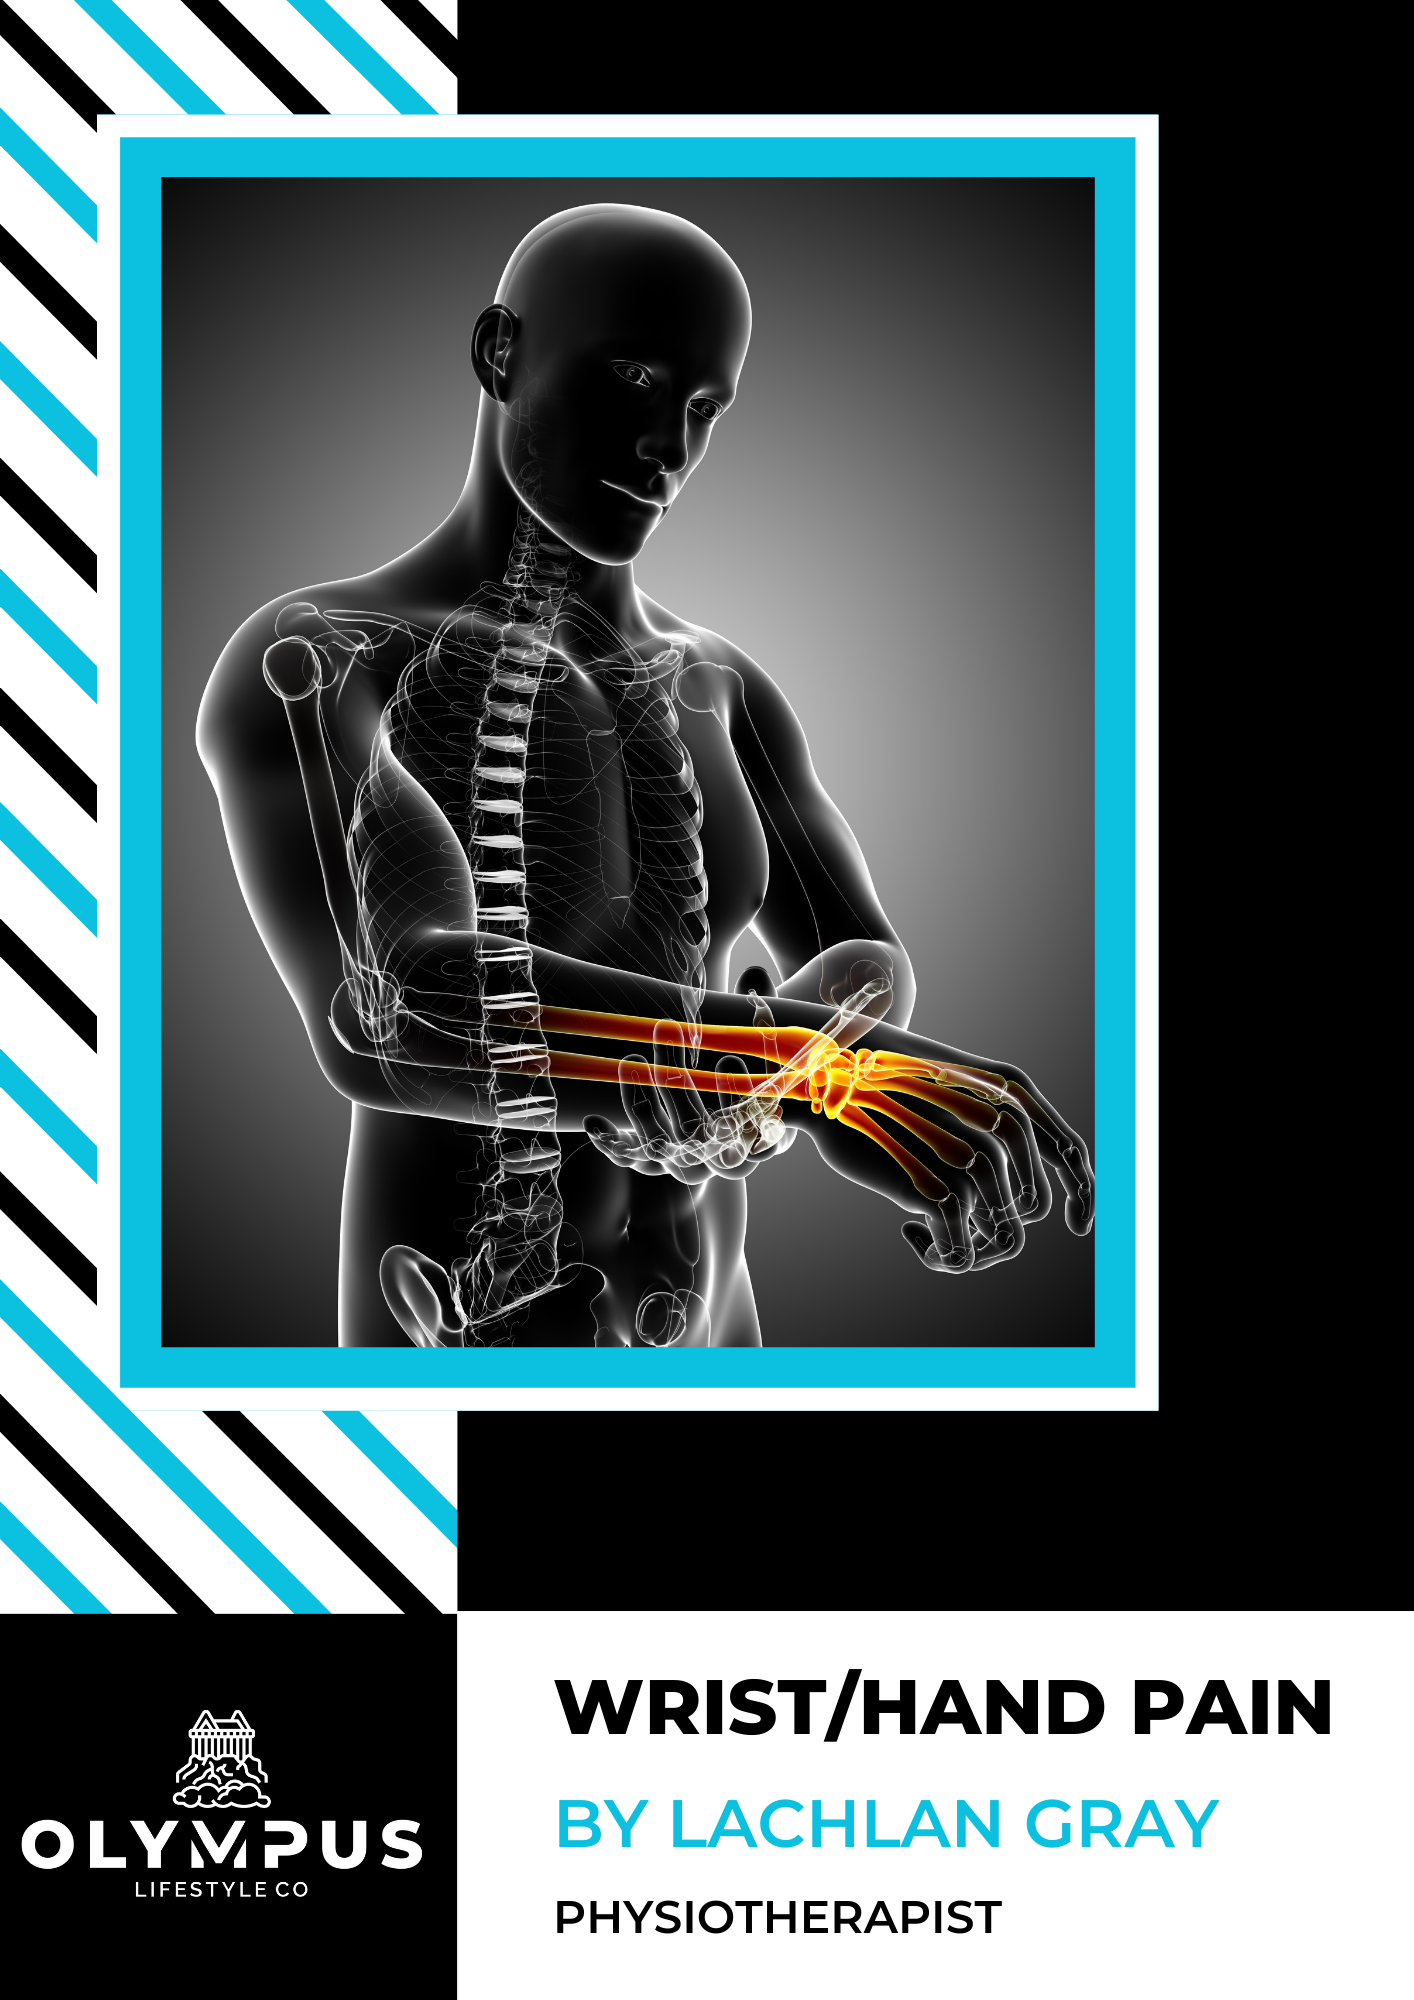 Clinical E-Book Series: Wrist/Hand Pain